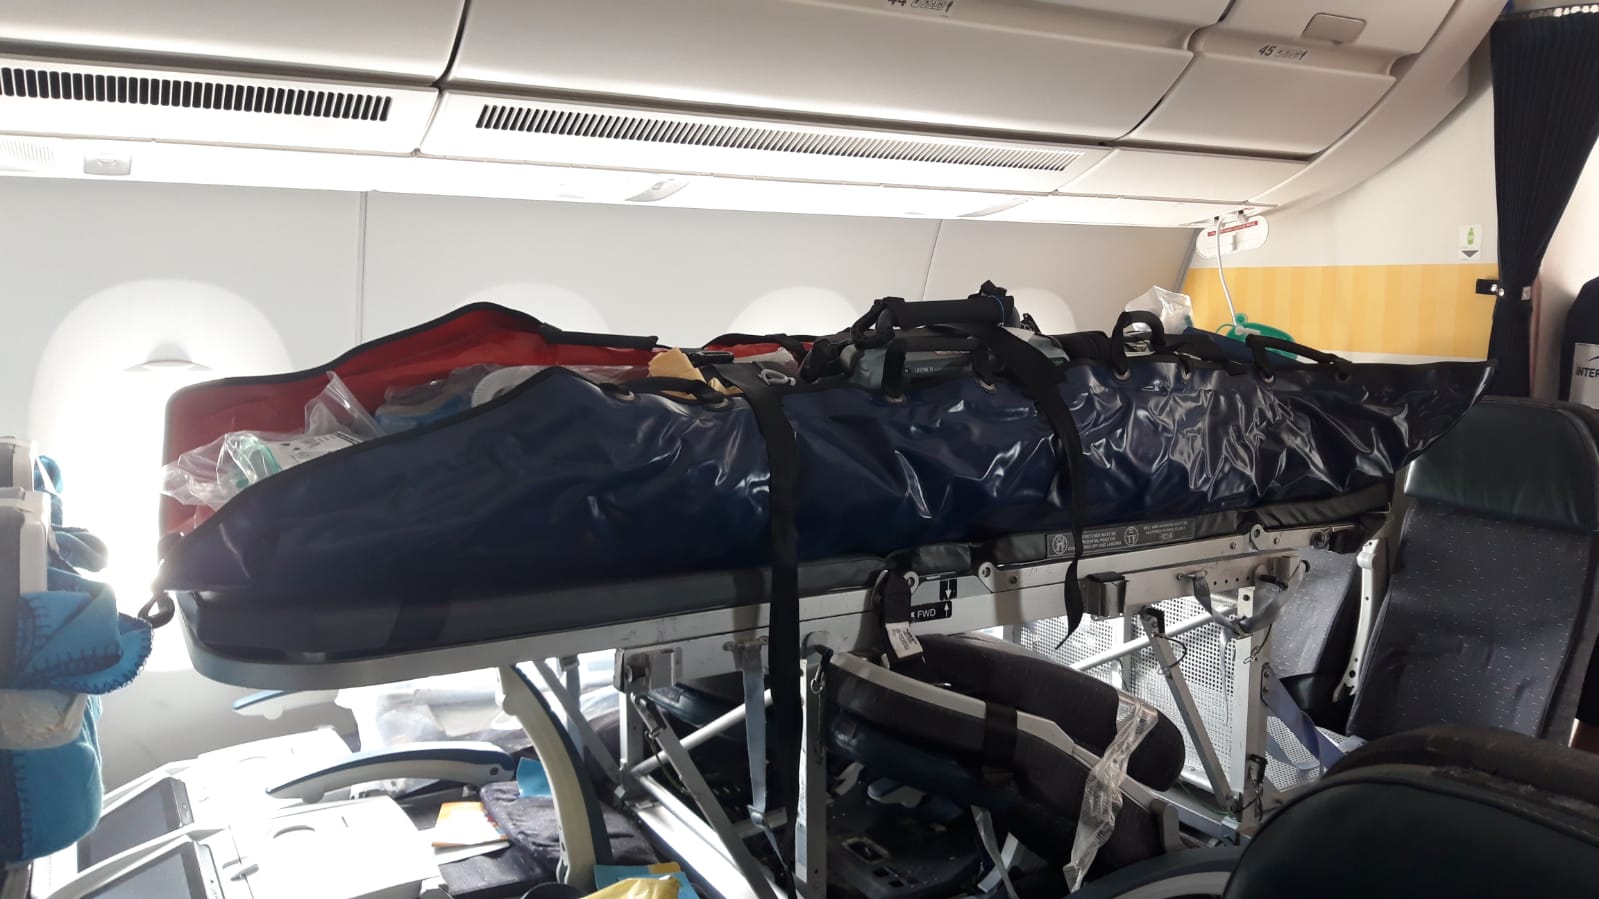     Les évacuations sanitaires s'intensifient : 8 patients COVID transportés vers l'Hexagone

